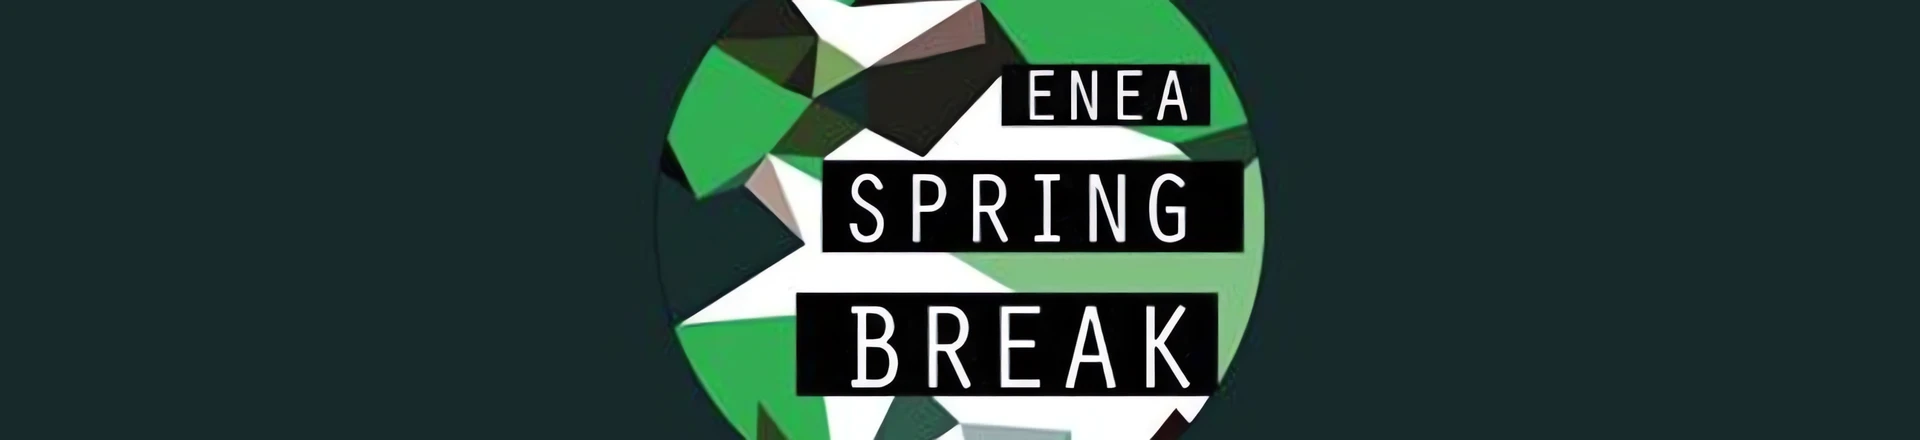 Enea Spring Break 2020 z nową datą